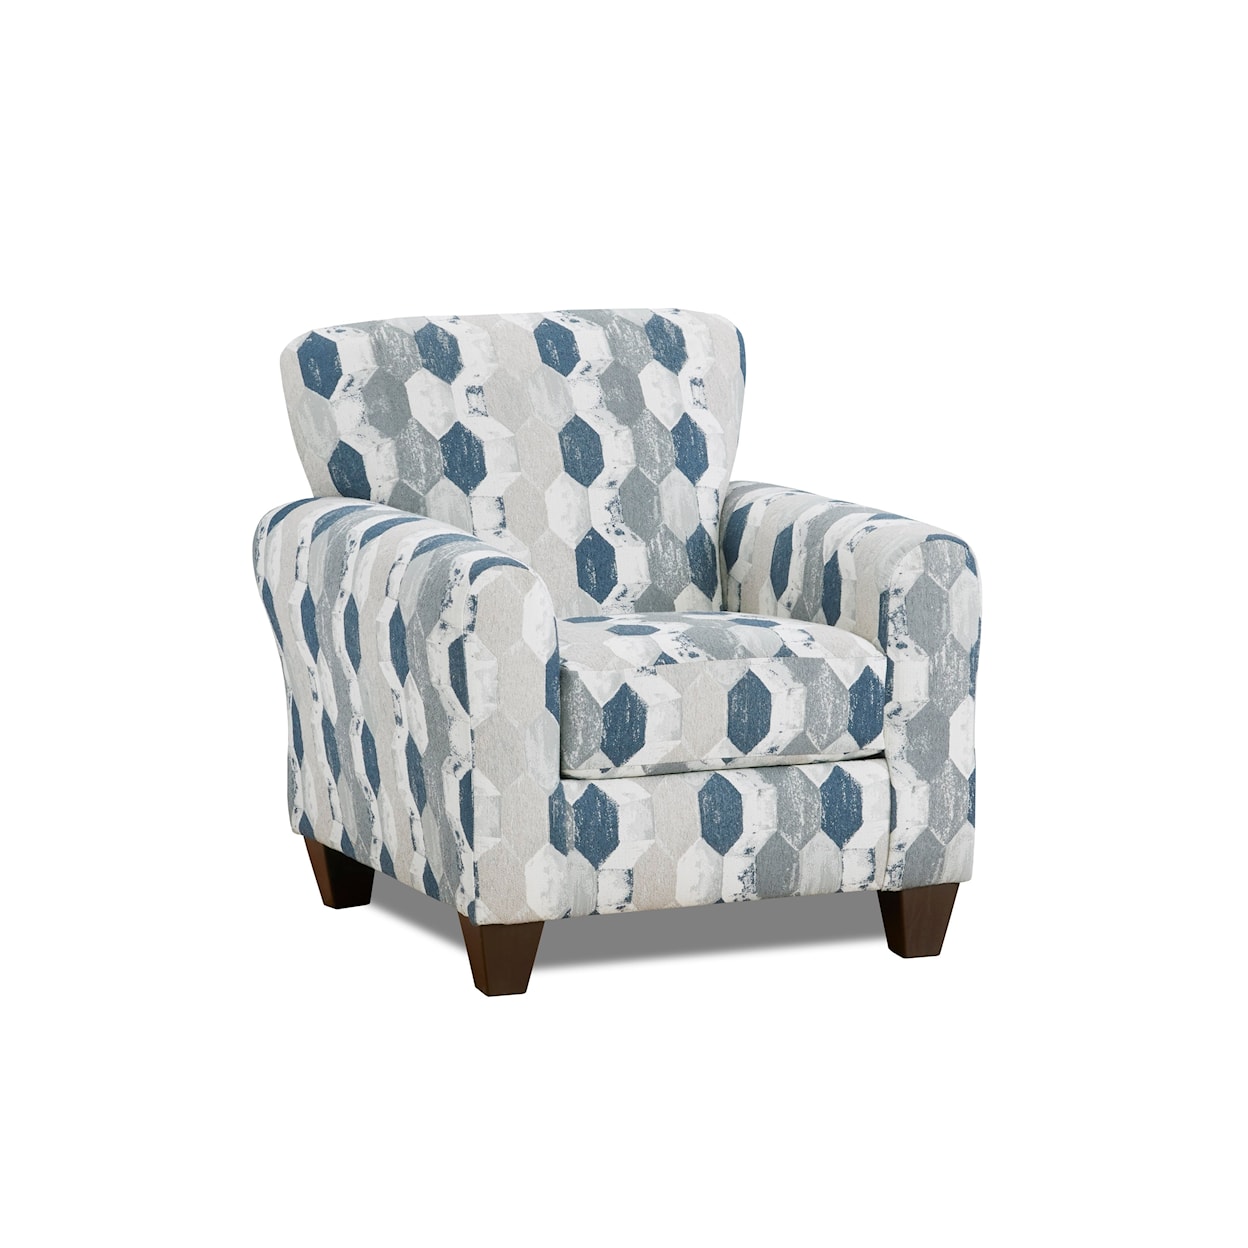 Affordable Furniture Herringbone Oatmeal Hexa Sapp accent Chair